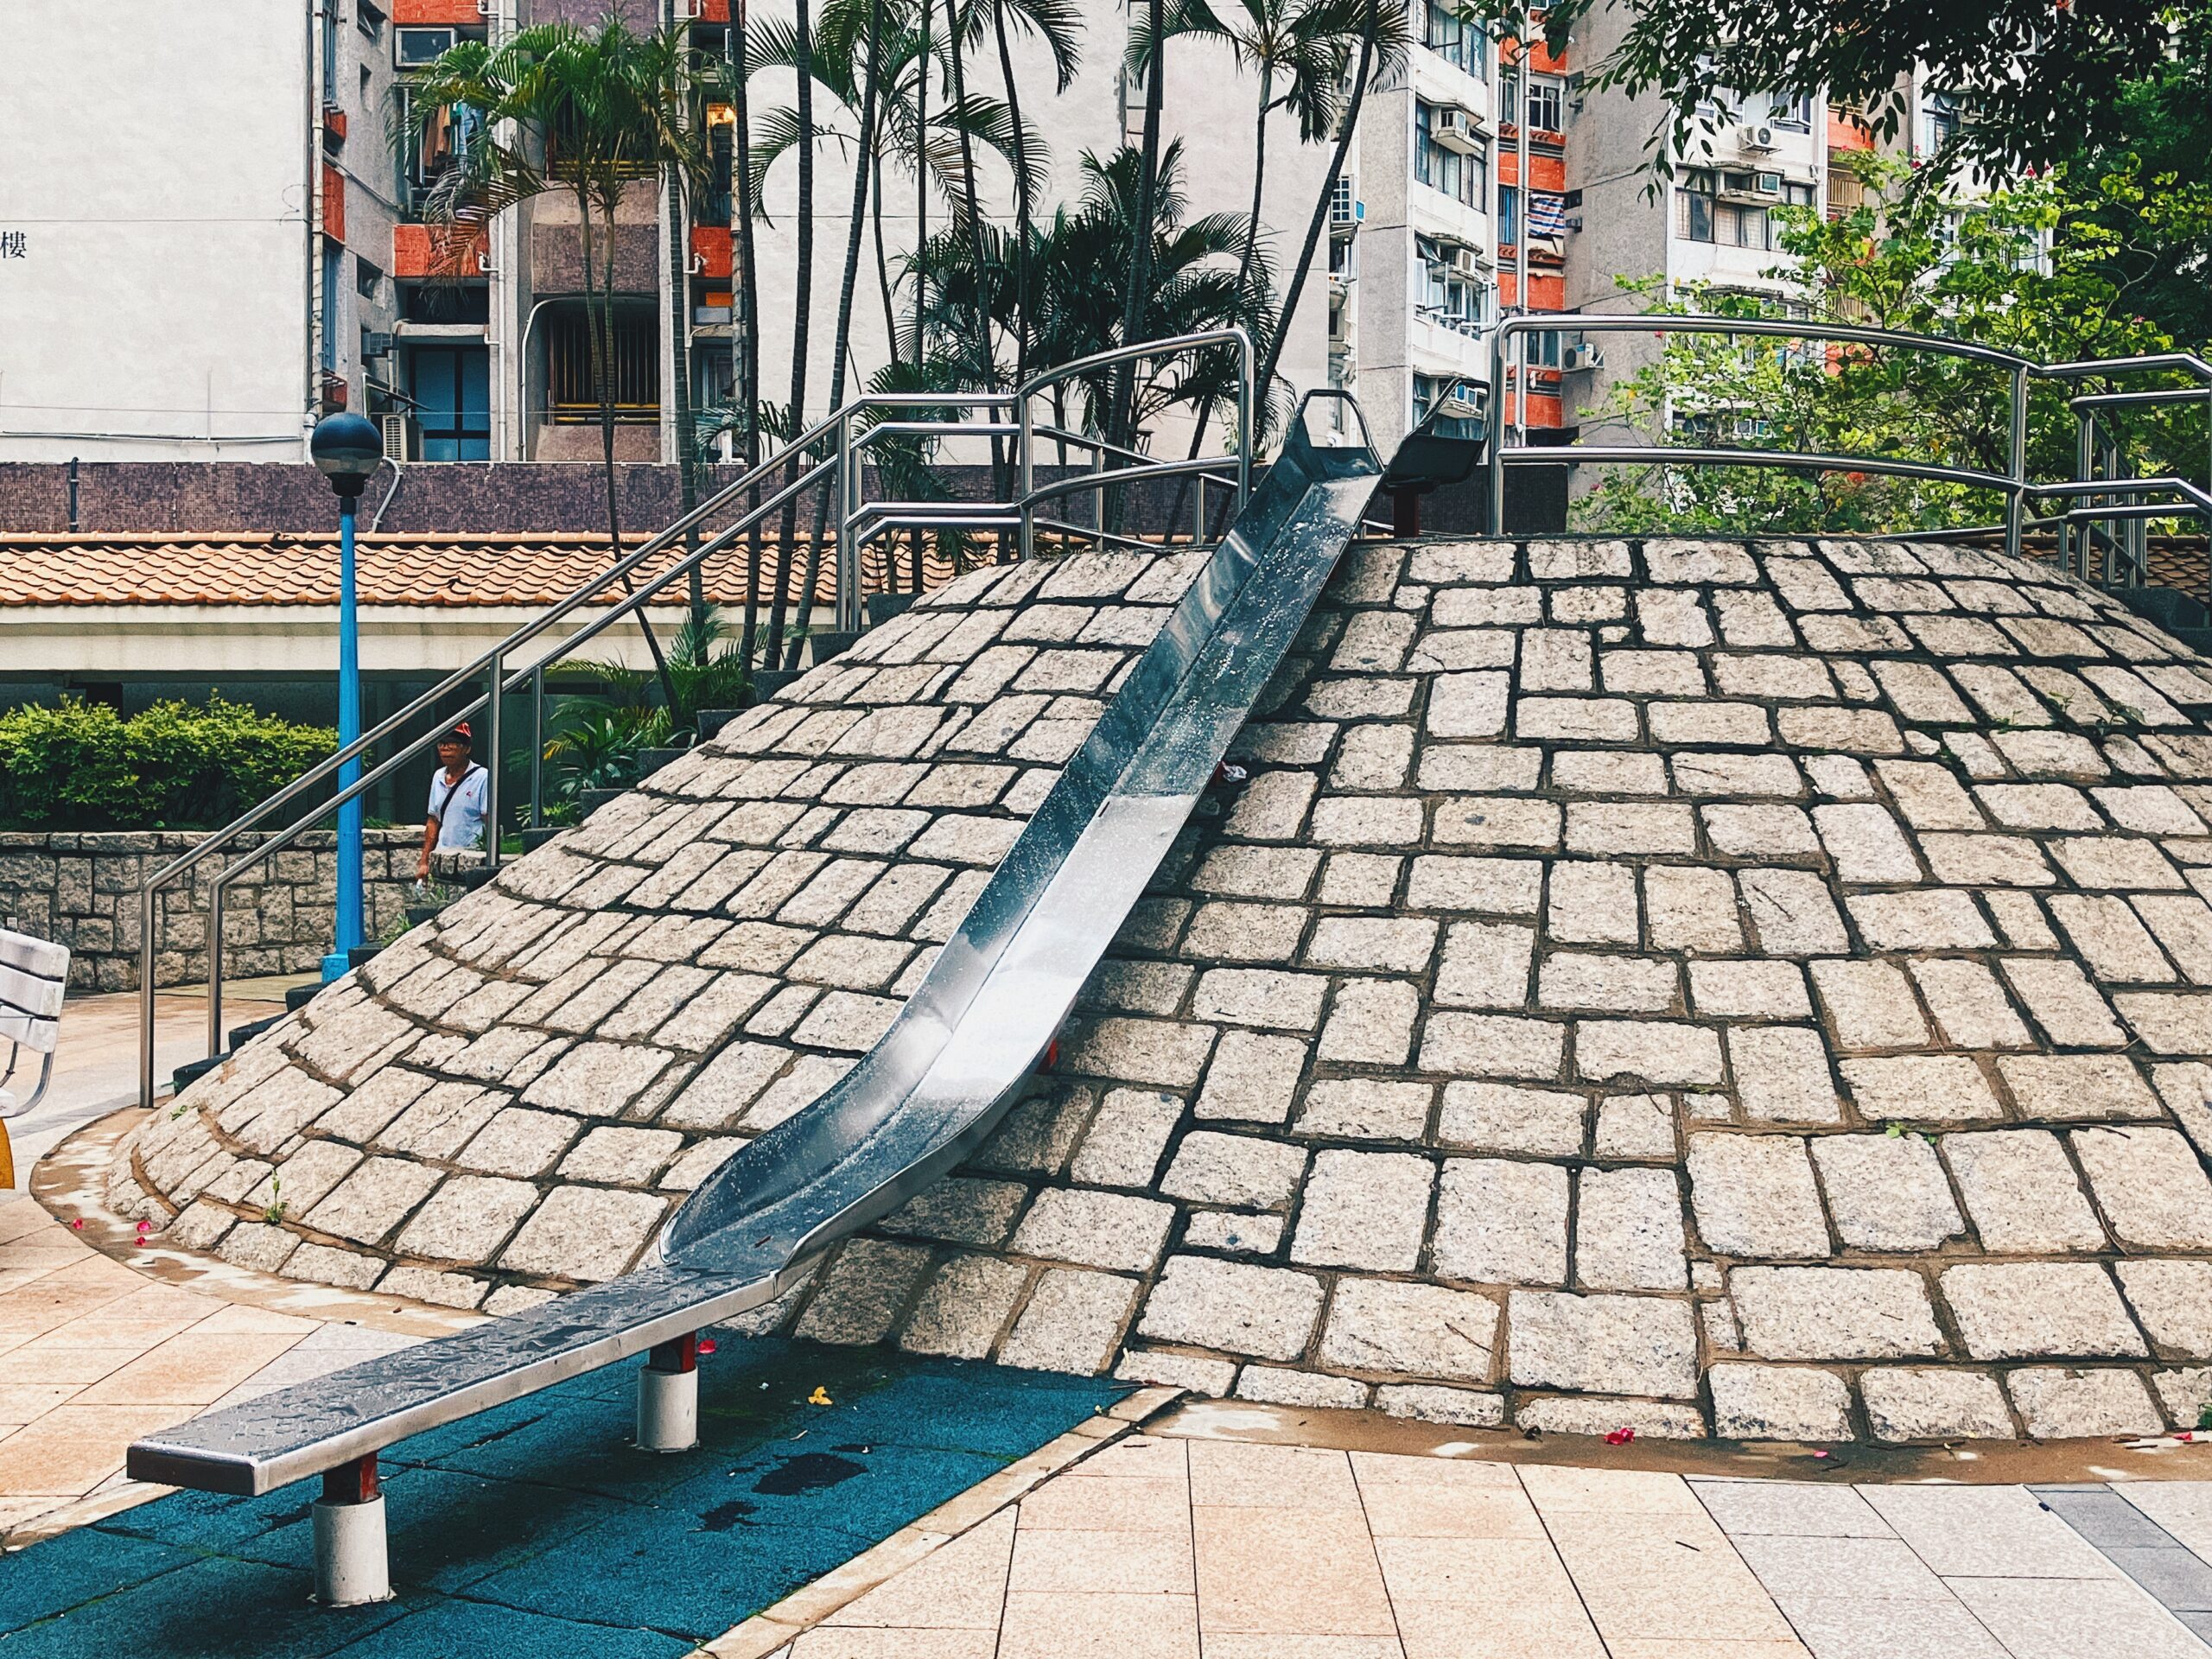 【香港公屋】九龍灣彩霞邨 難得保留中式庭園水池設計